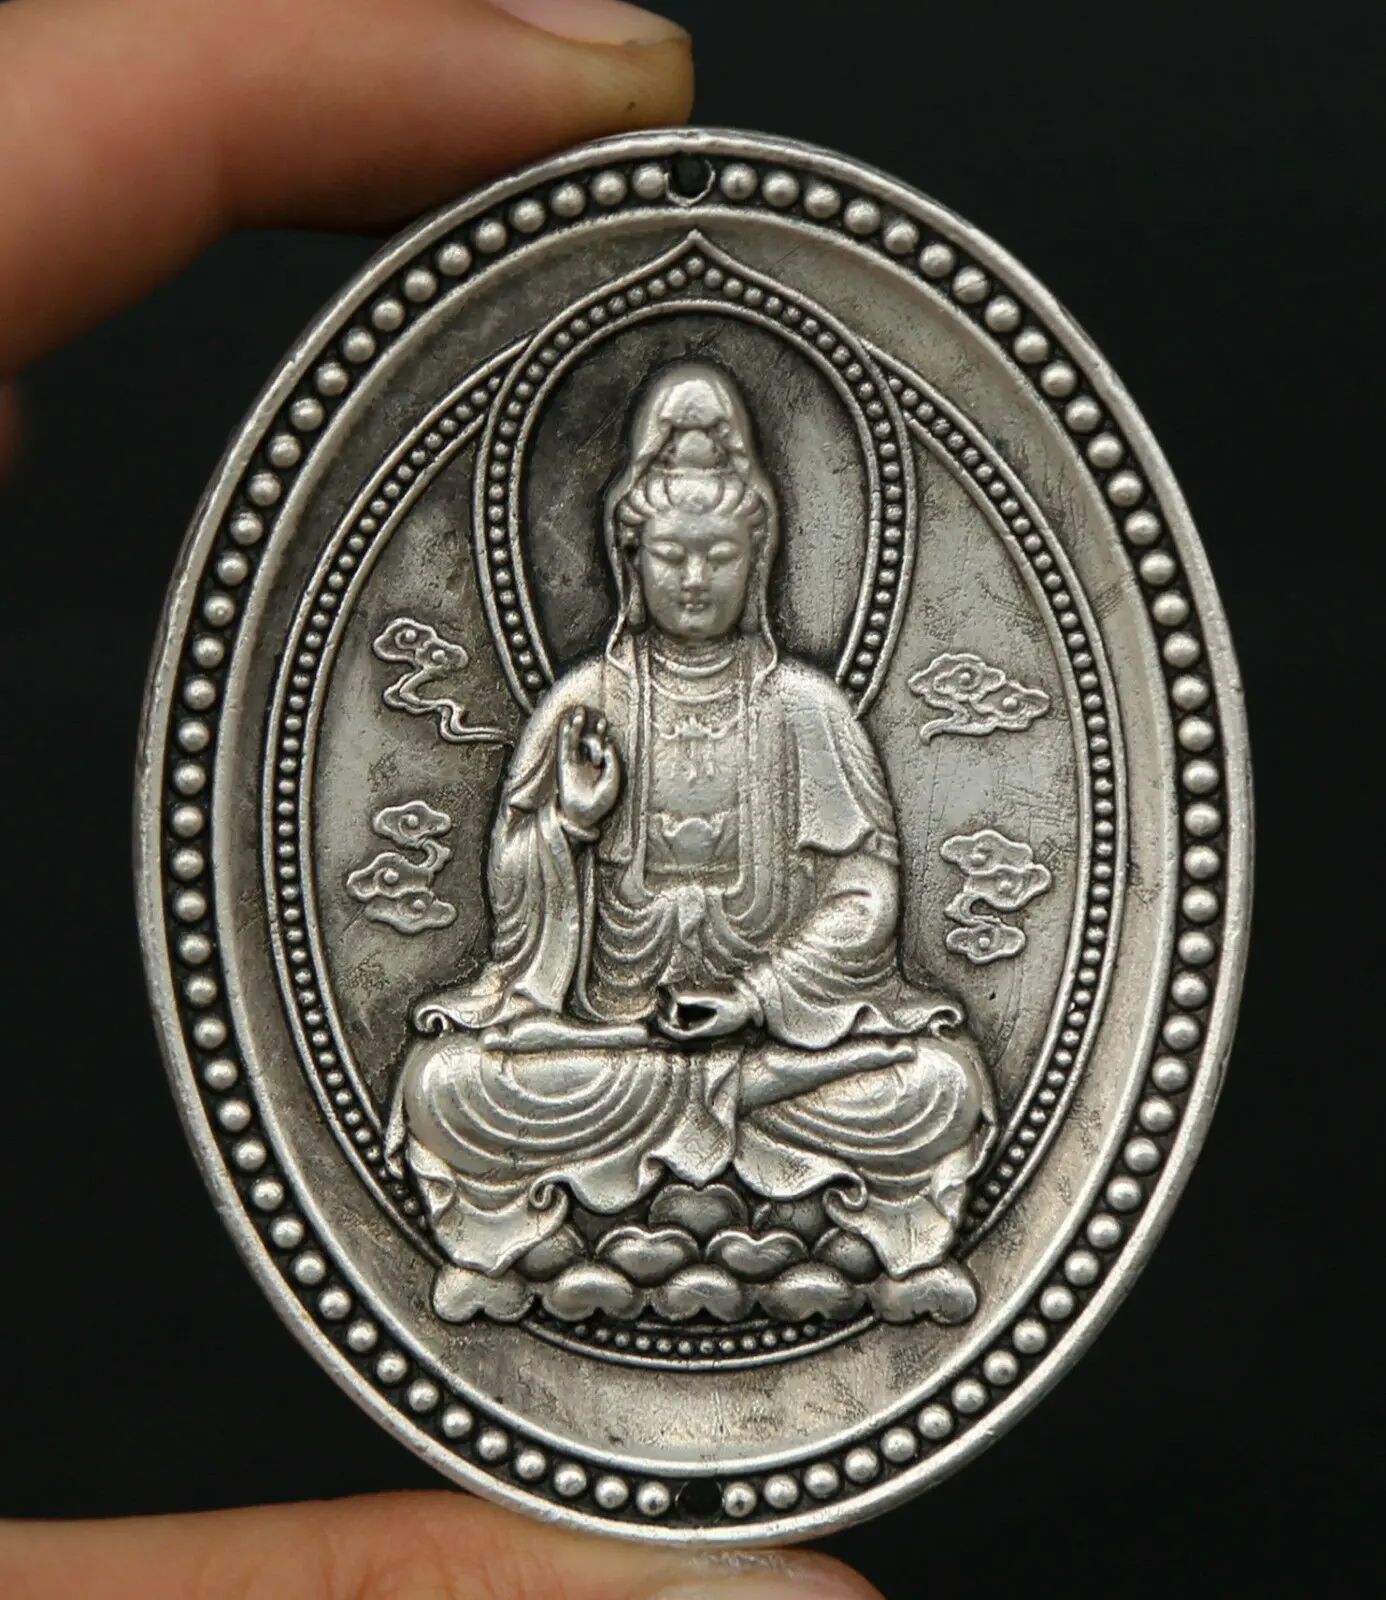 2.6" Chinese Miao Silver Buddhism Kwan-yin Guan Yin Boddhisattva Amulet Pendant